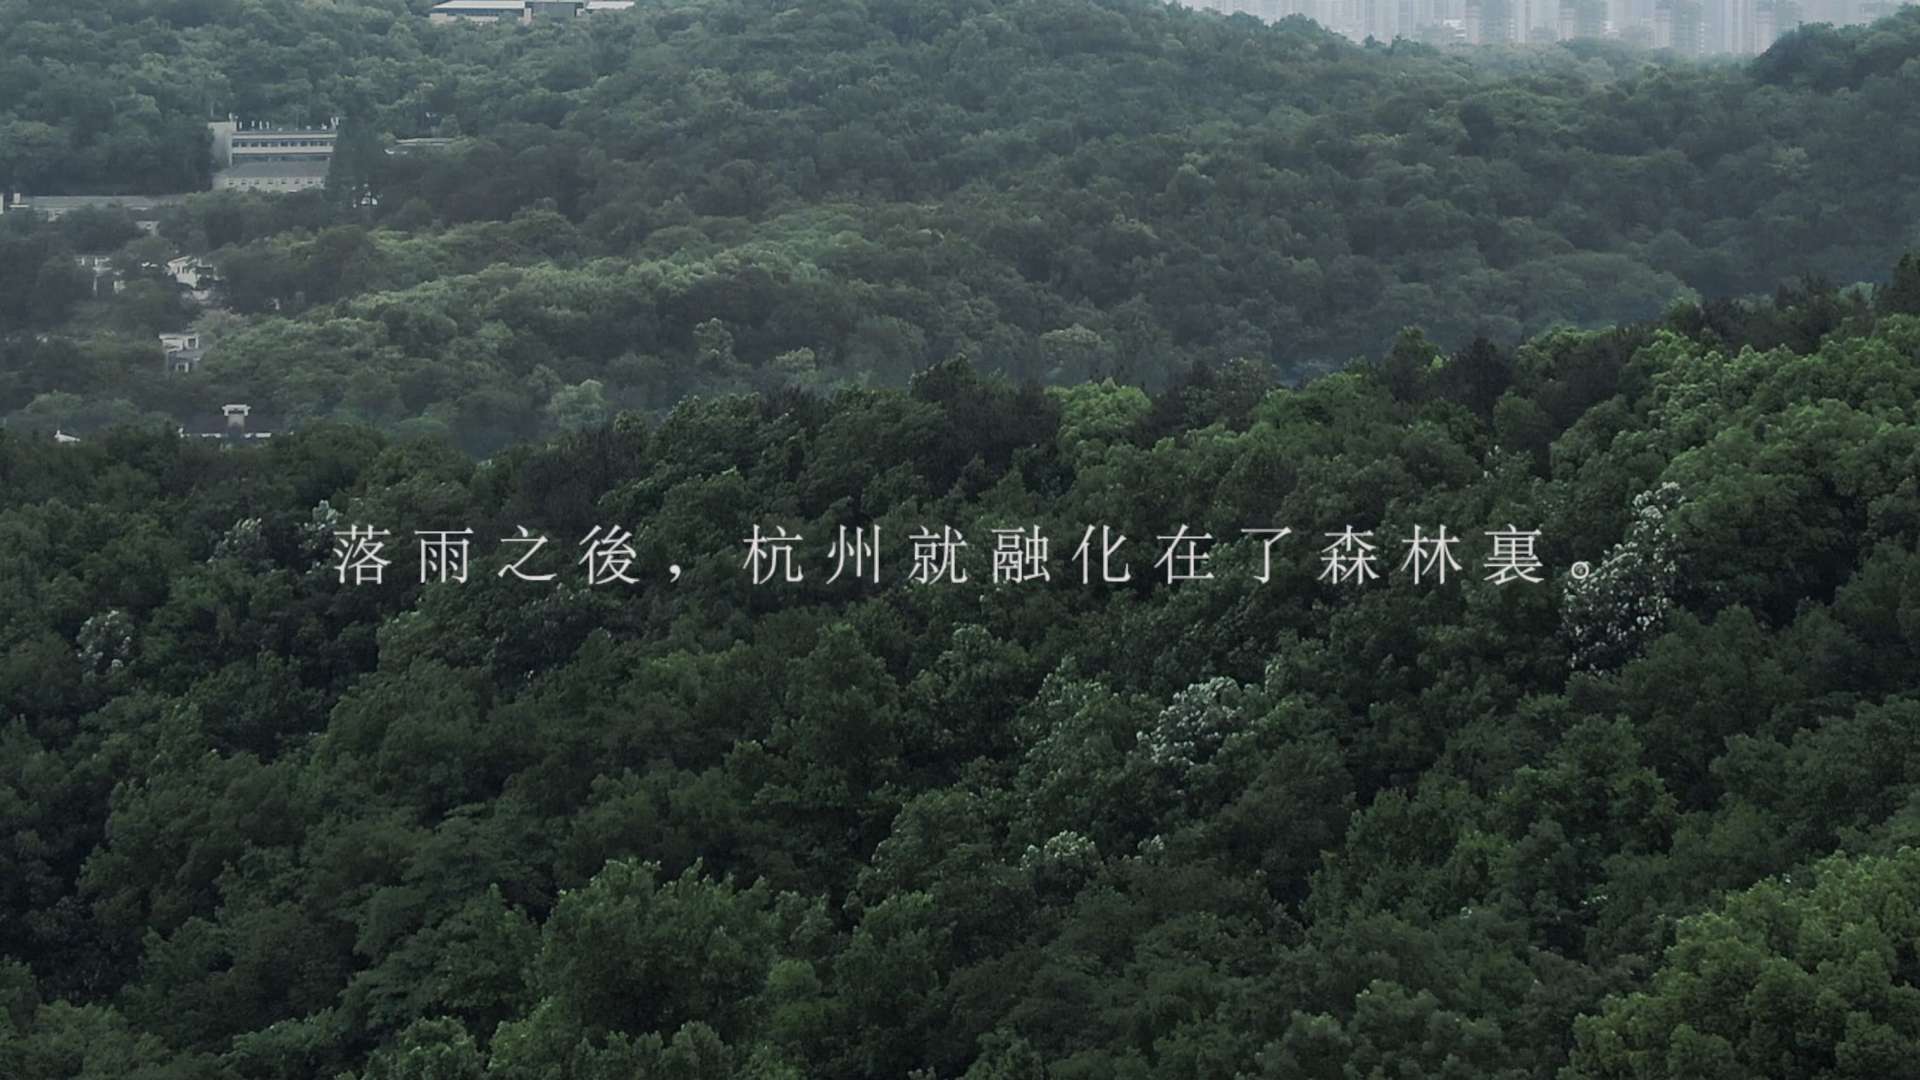 「 落雨之后，杭州就融化在了森林里。」